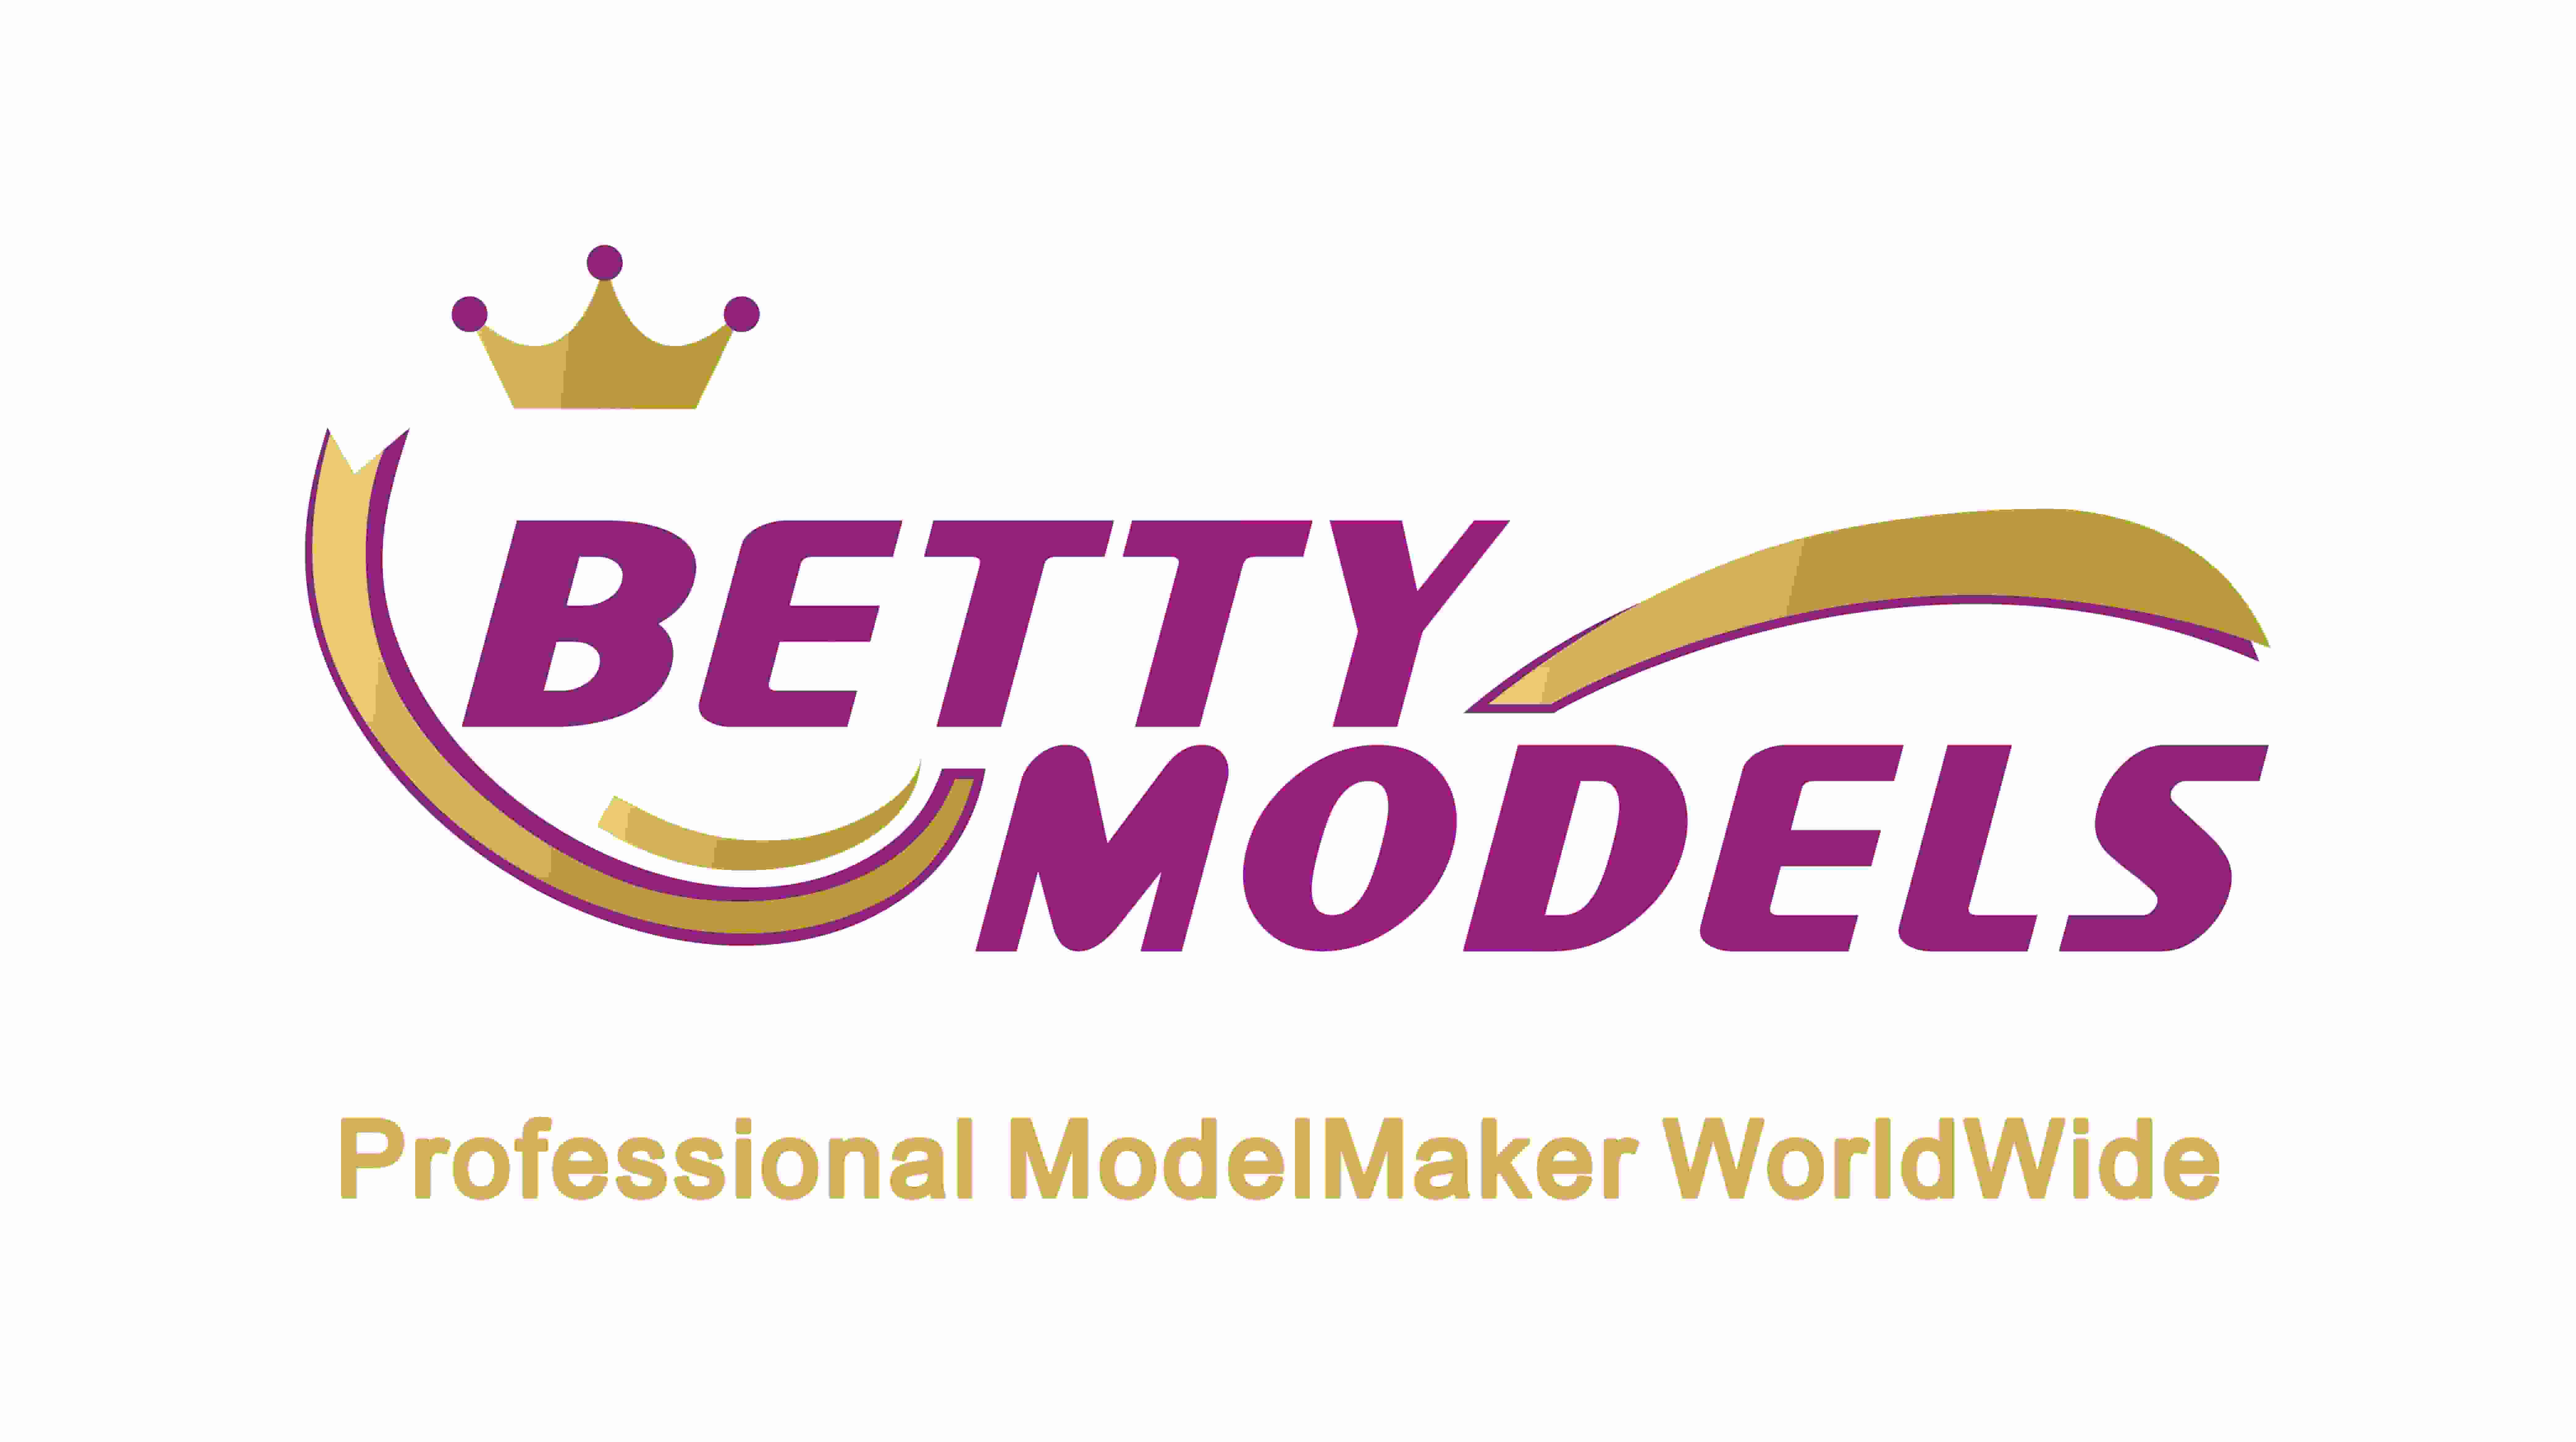 Betty Models logo endres til ny logo